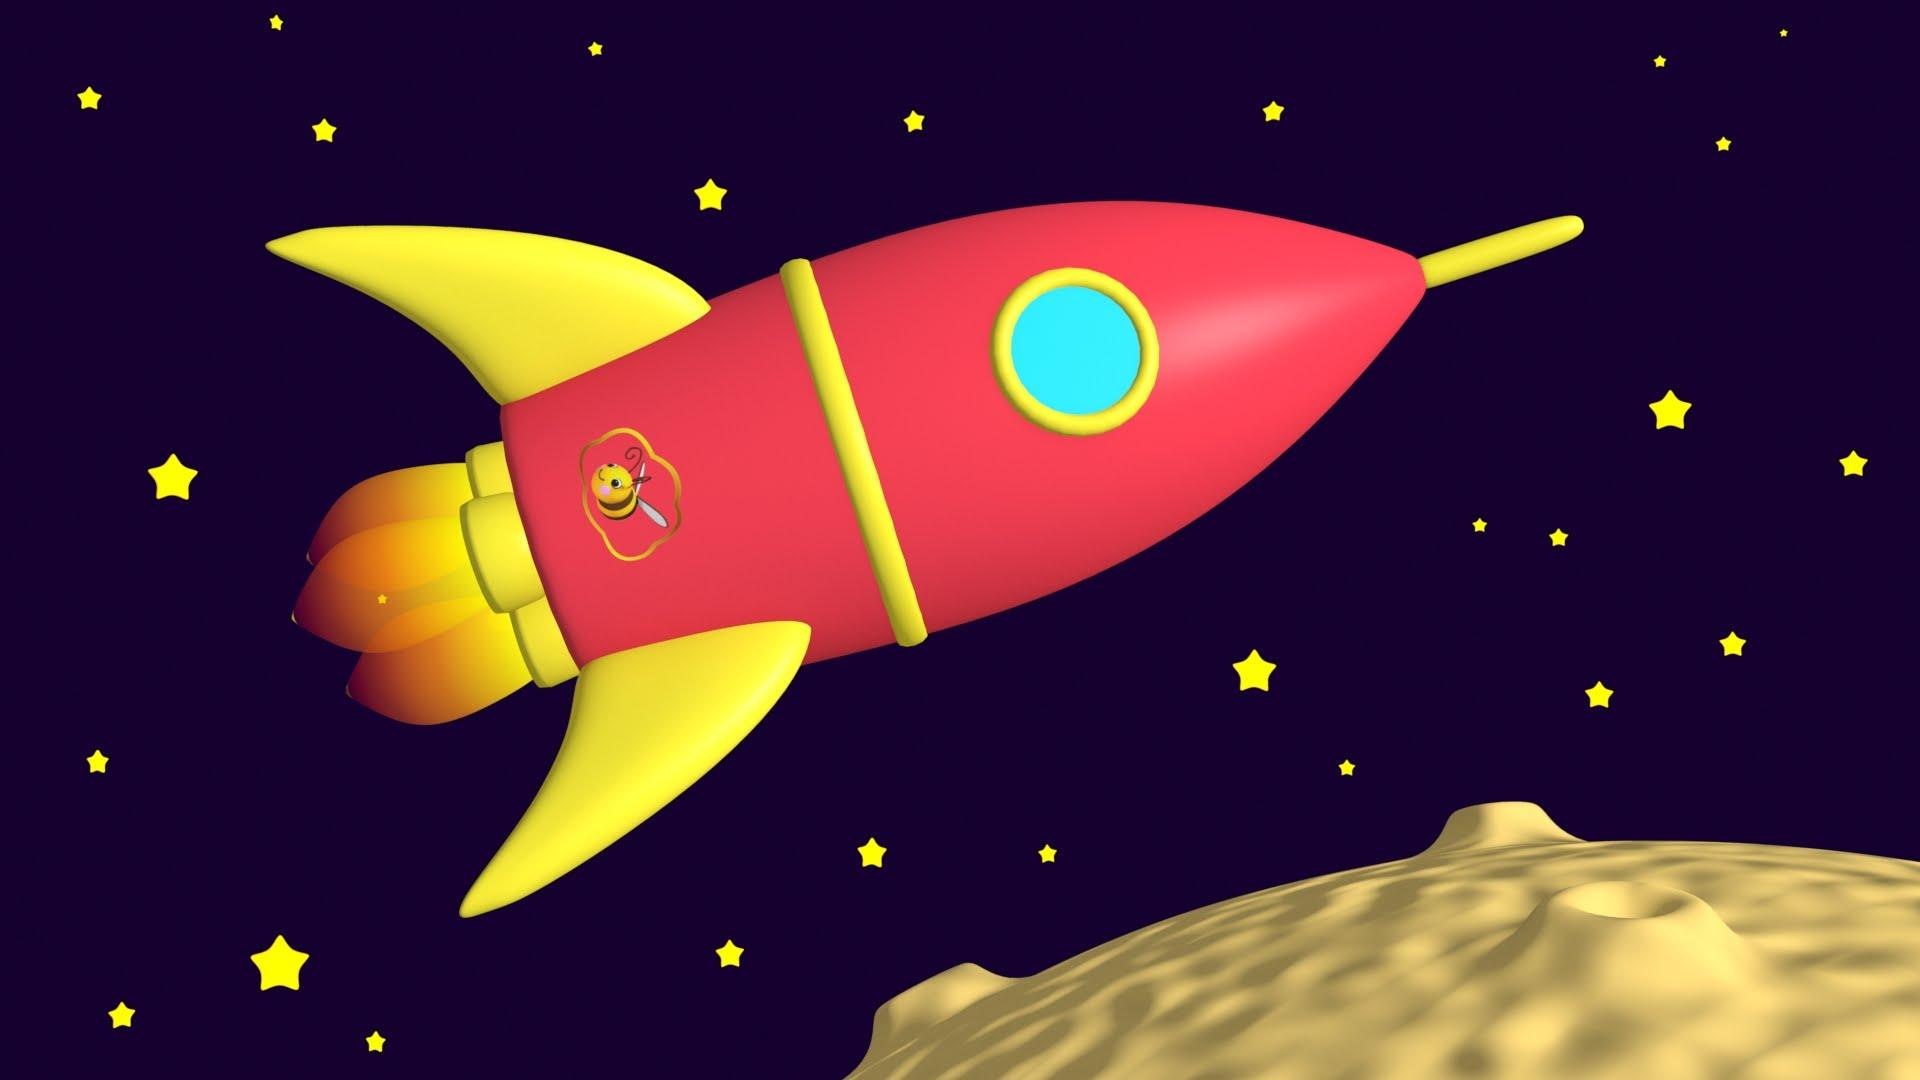 Мультфильмы про космос для детей